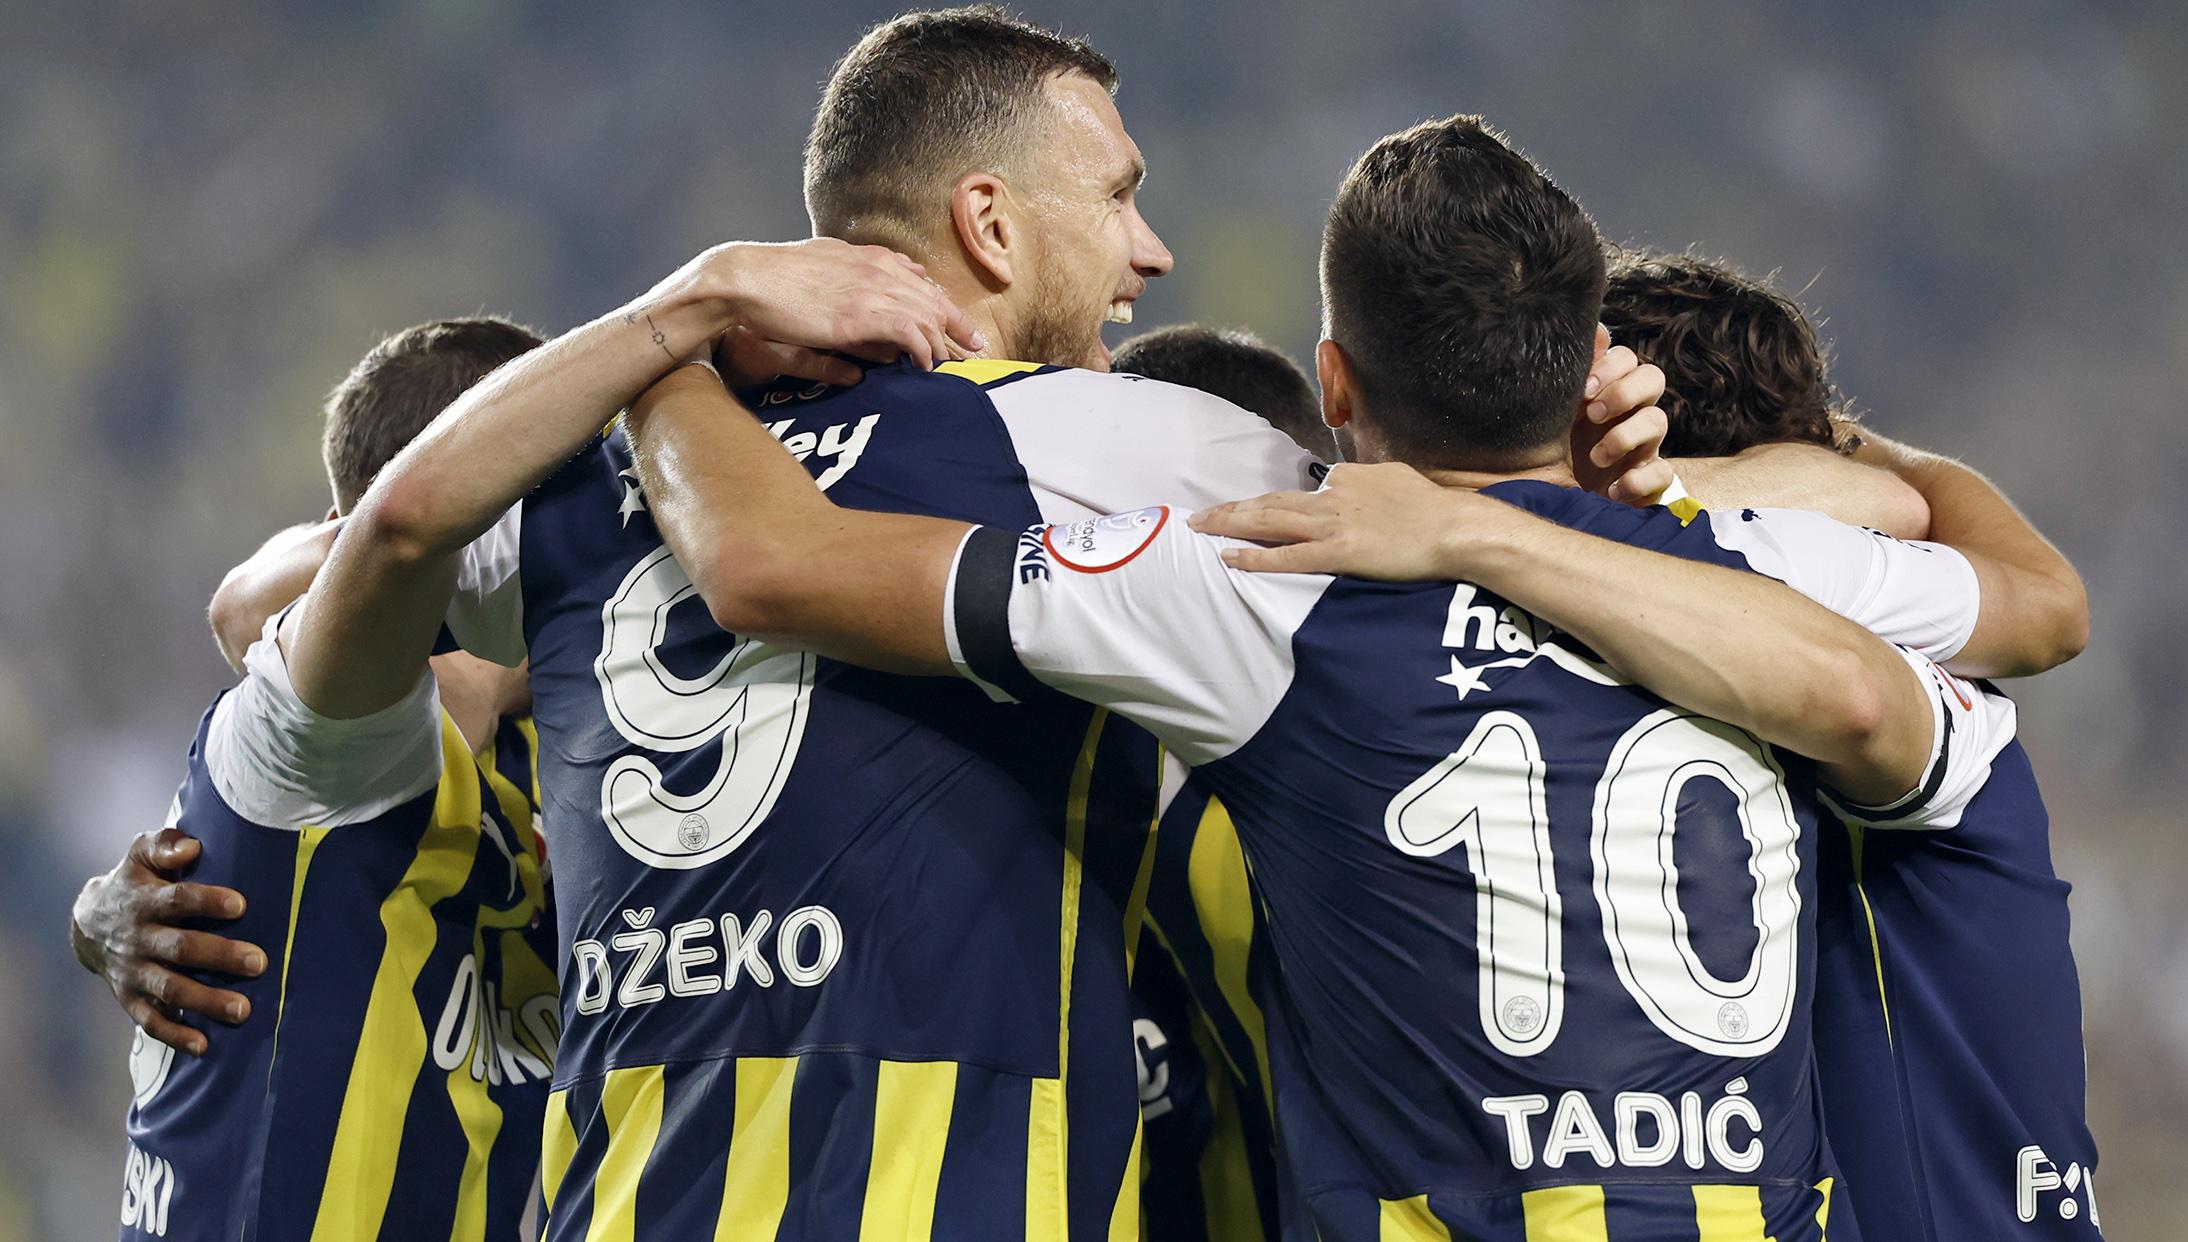 HL Süper Lig Fenerbahçe vs. Hatayspor